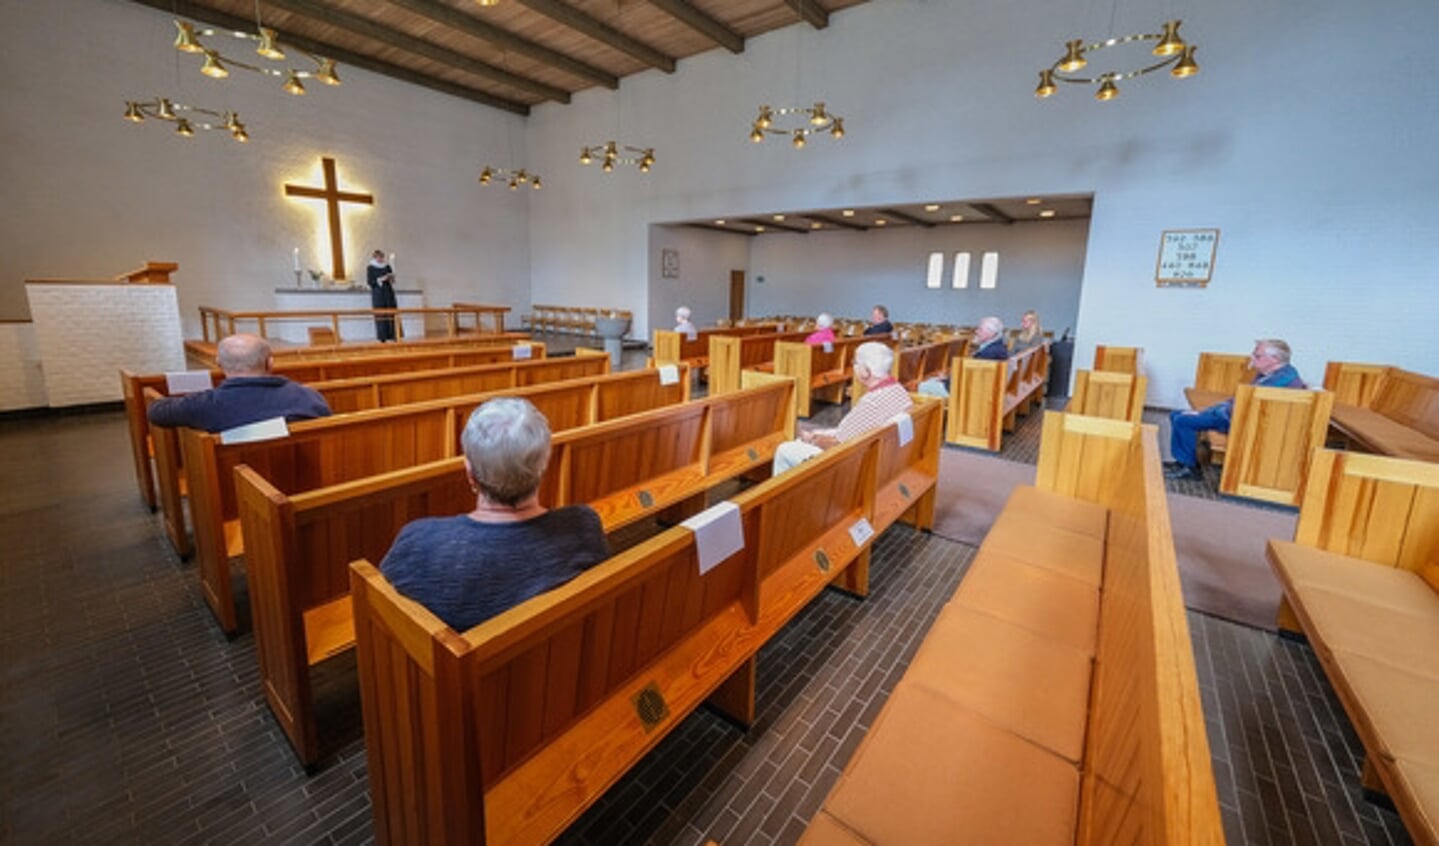 Sådan så det ud i maj, da Ansgar Kirke i Flensborg igen kunne åbne dørene efter forårets nedlukning. Ved årets julegudstjenester skal der være mindst 1,5 meter mellem kirkegængerne. Arkivfoto: 